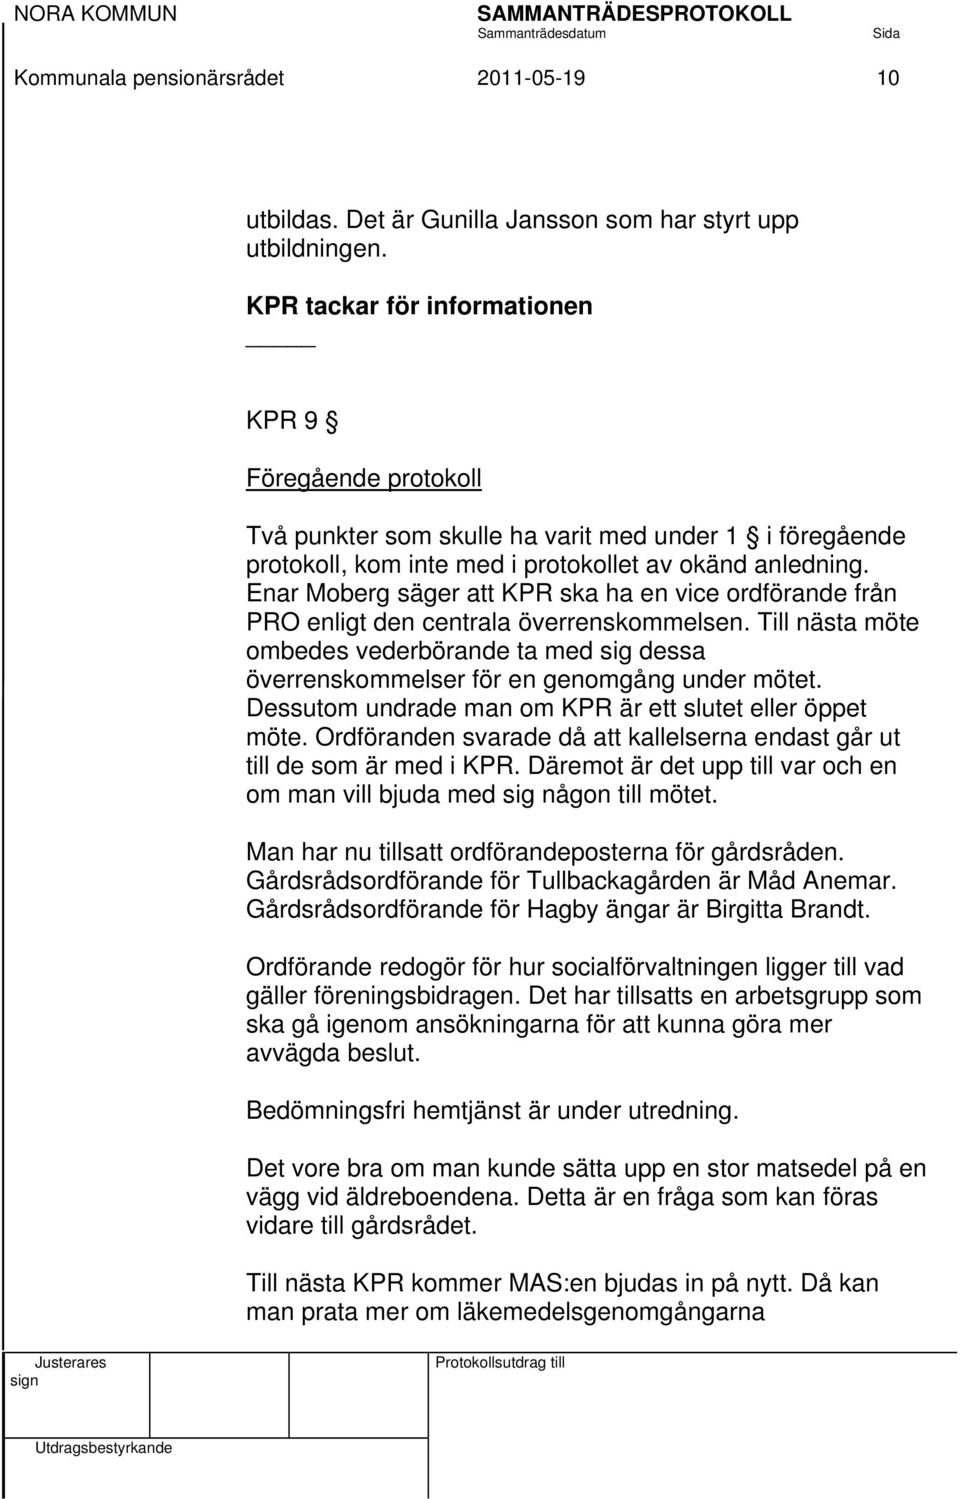 Enar Moberg säger att KPR ska ha en vice ordförande från PRO enligt den centrala överrenskommelsen.